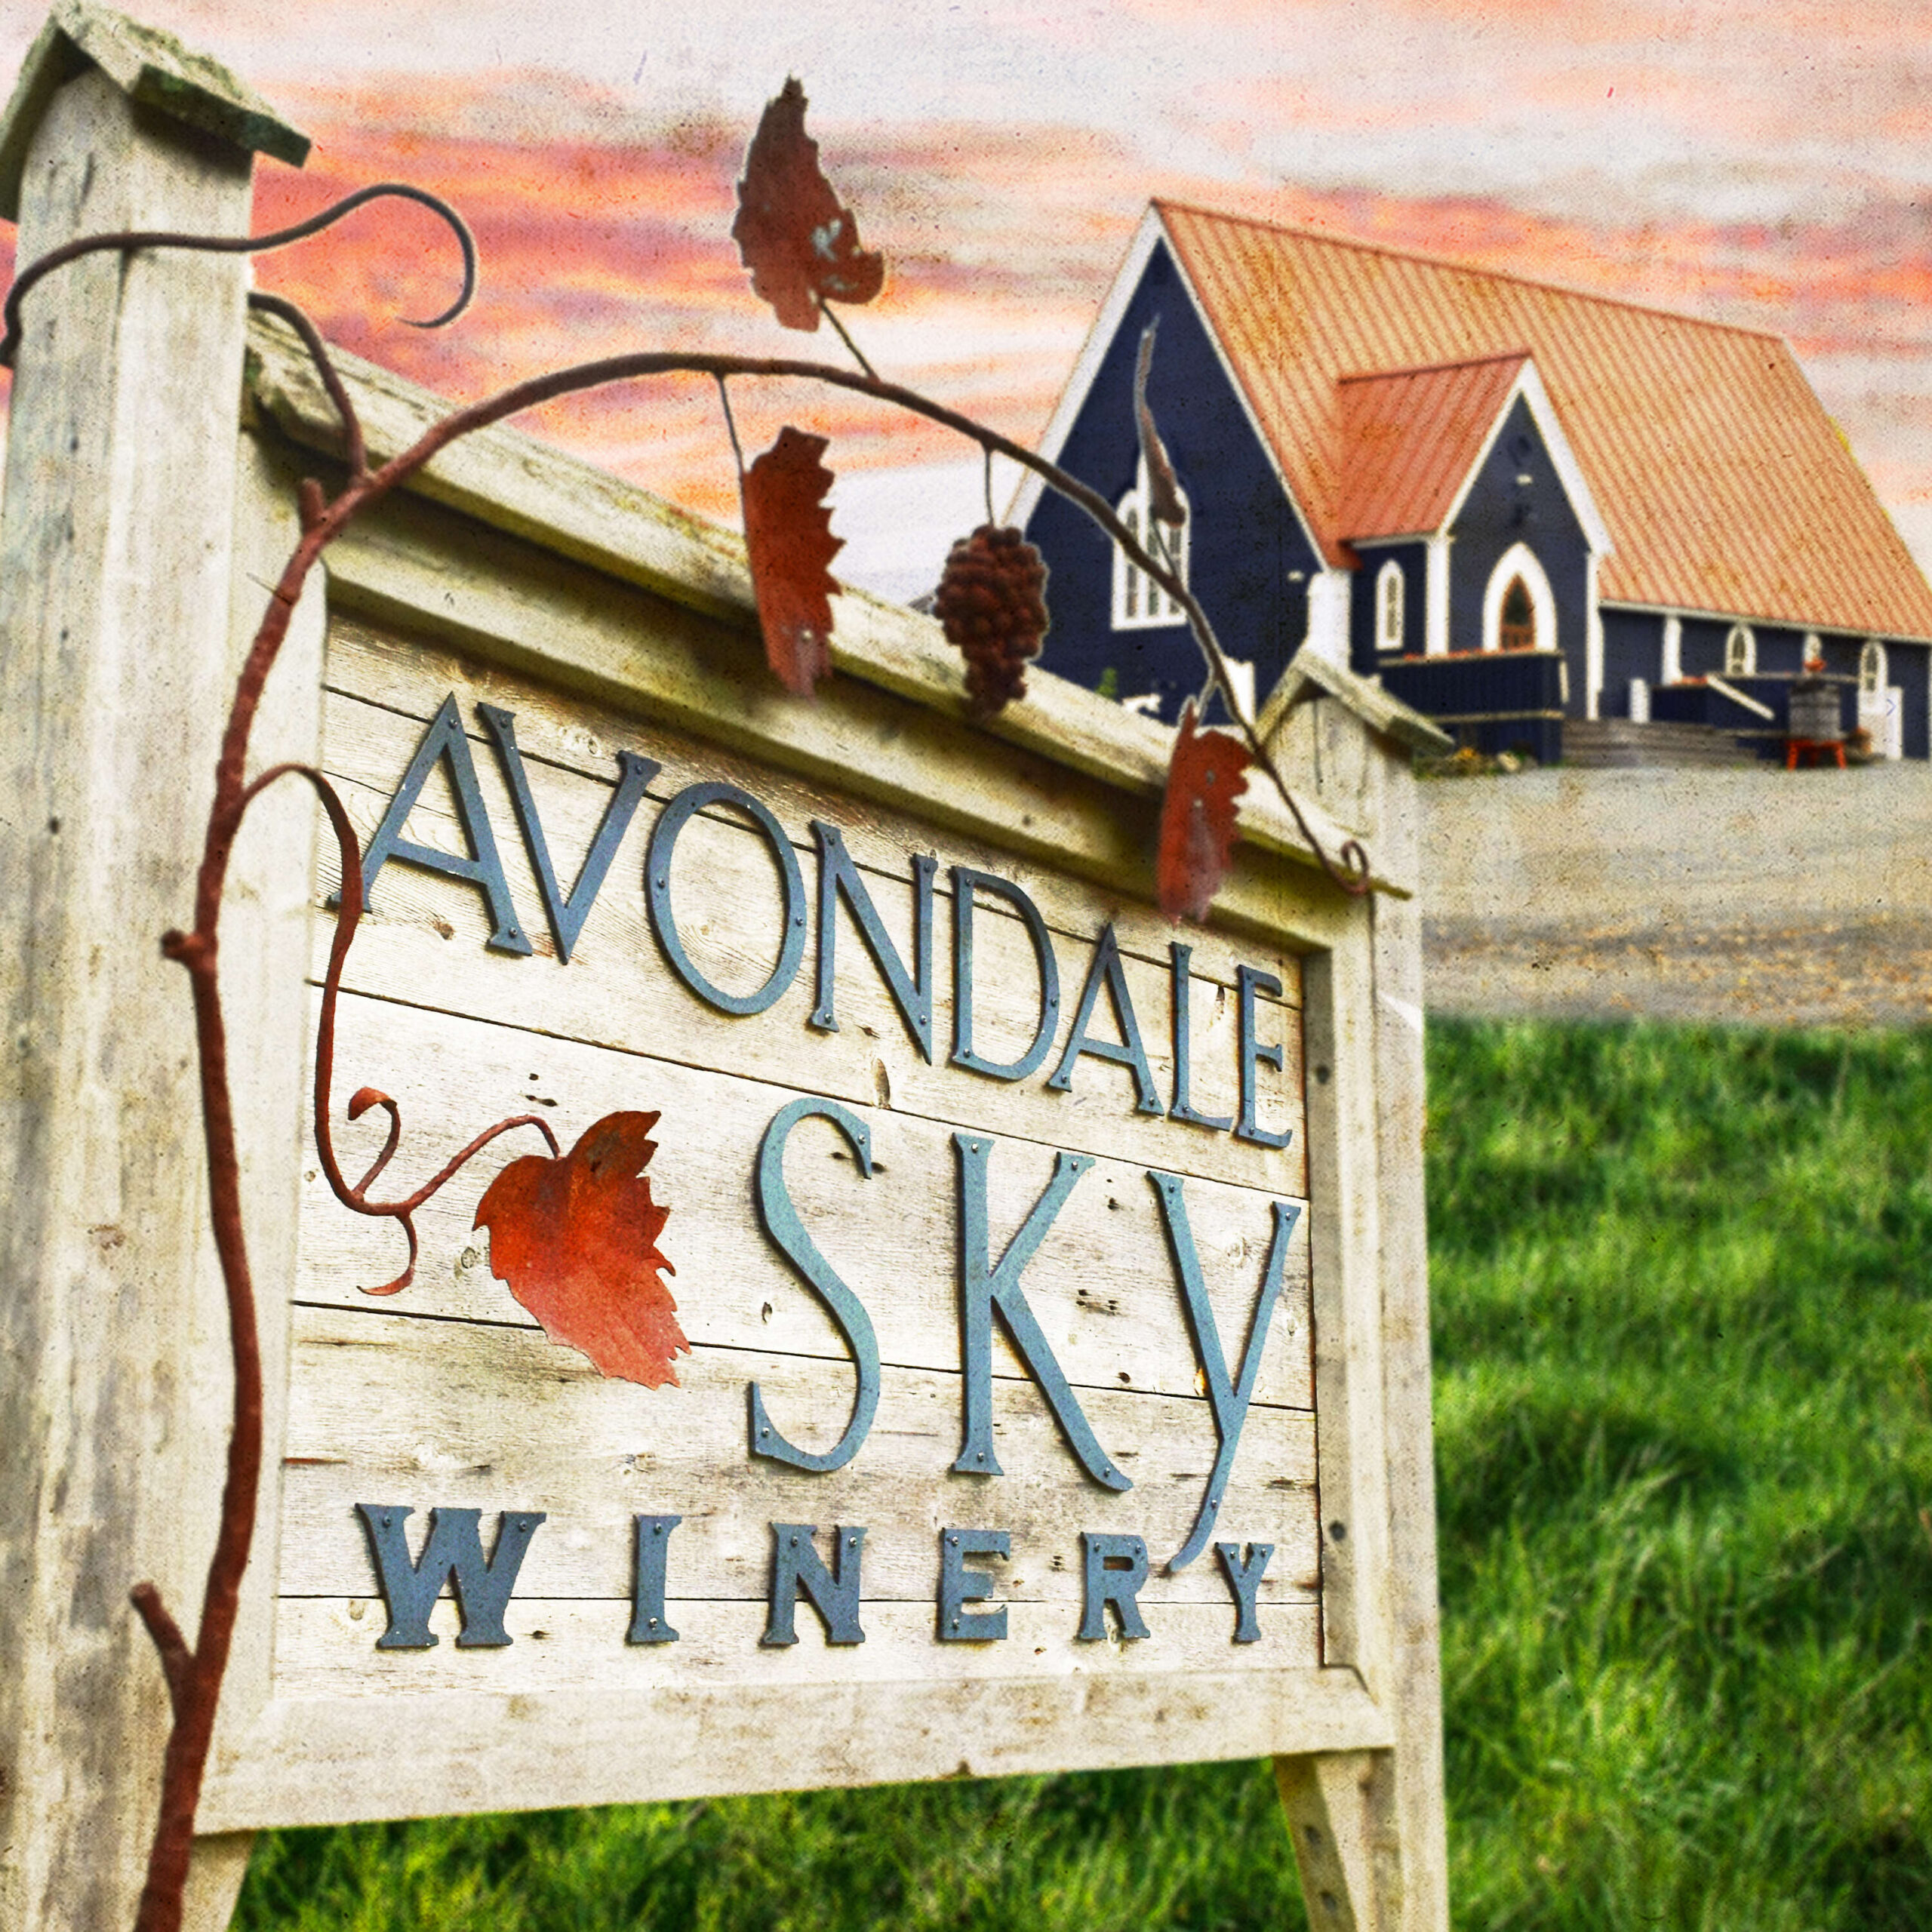 Avondale Sky Winery